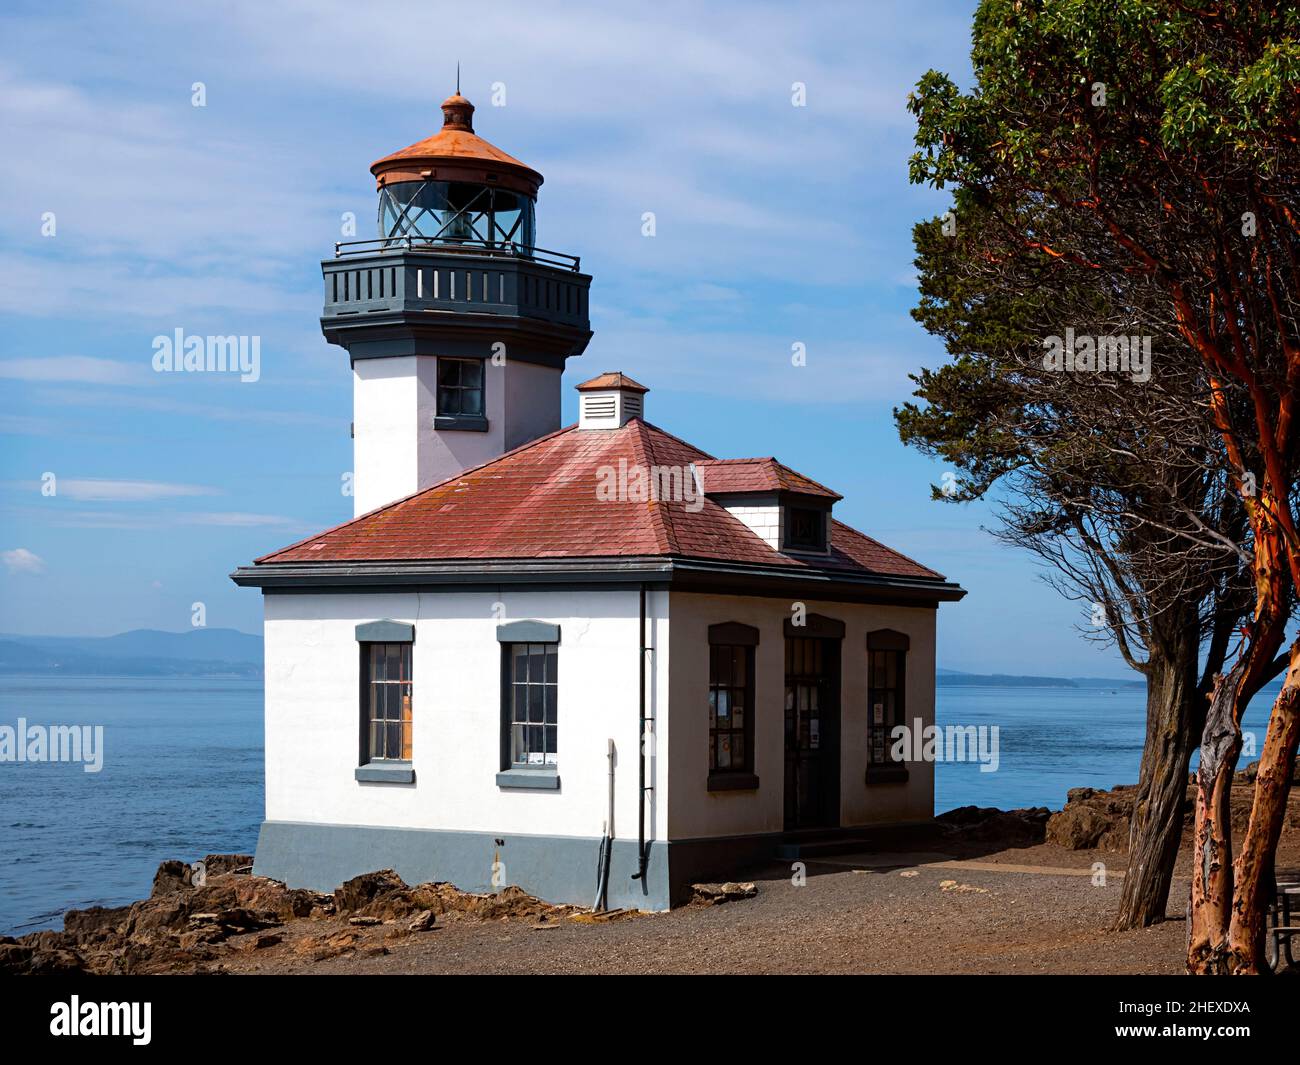 WA21110-00...WASHINGTON - Lime Kiln Lighthouse Situado en el borde del estrecho de Haro en la isla de San Juan. Foto de stock